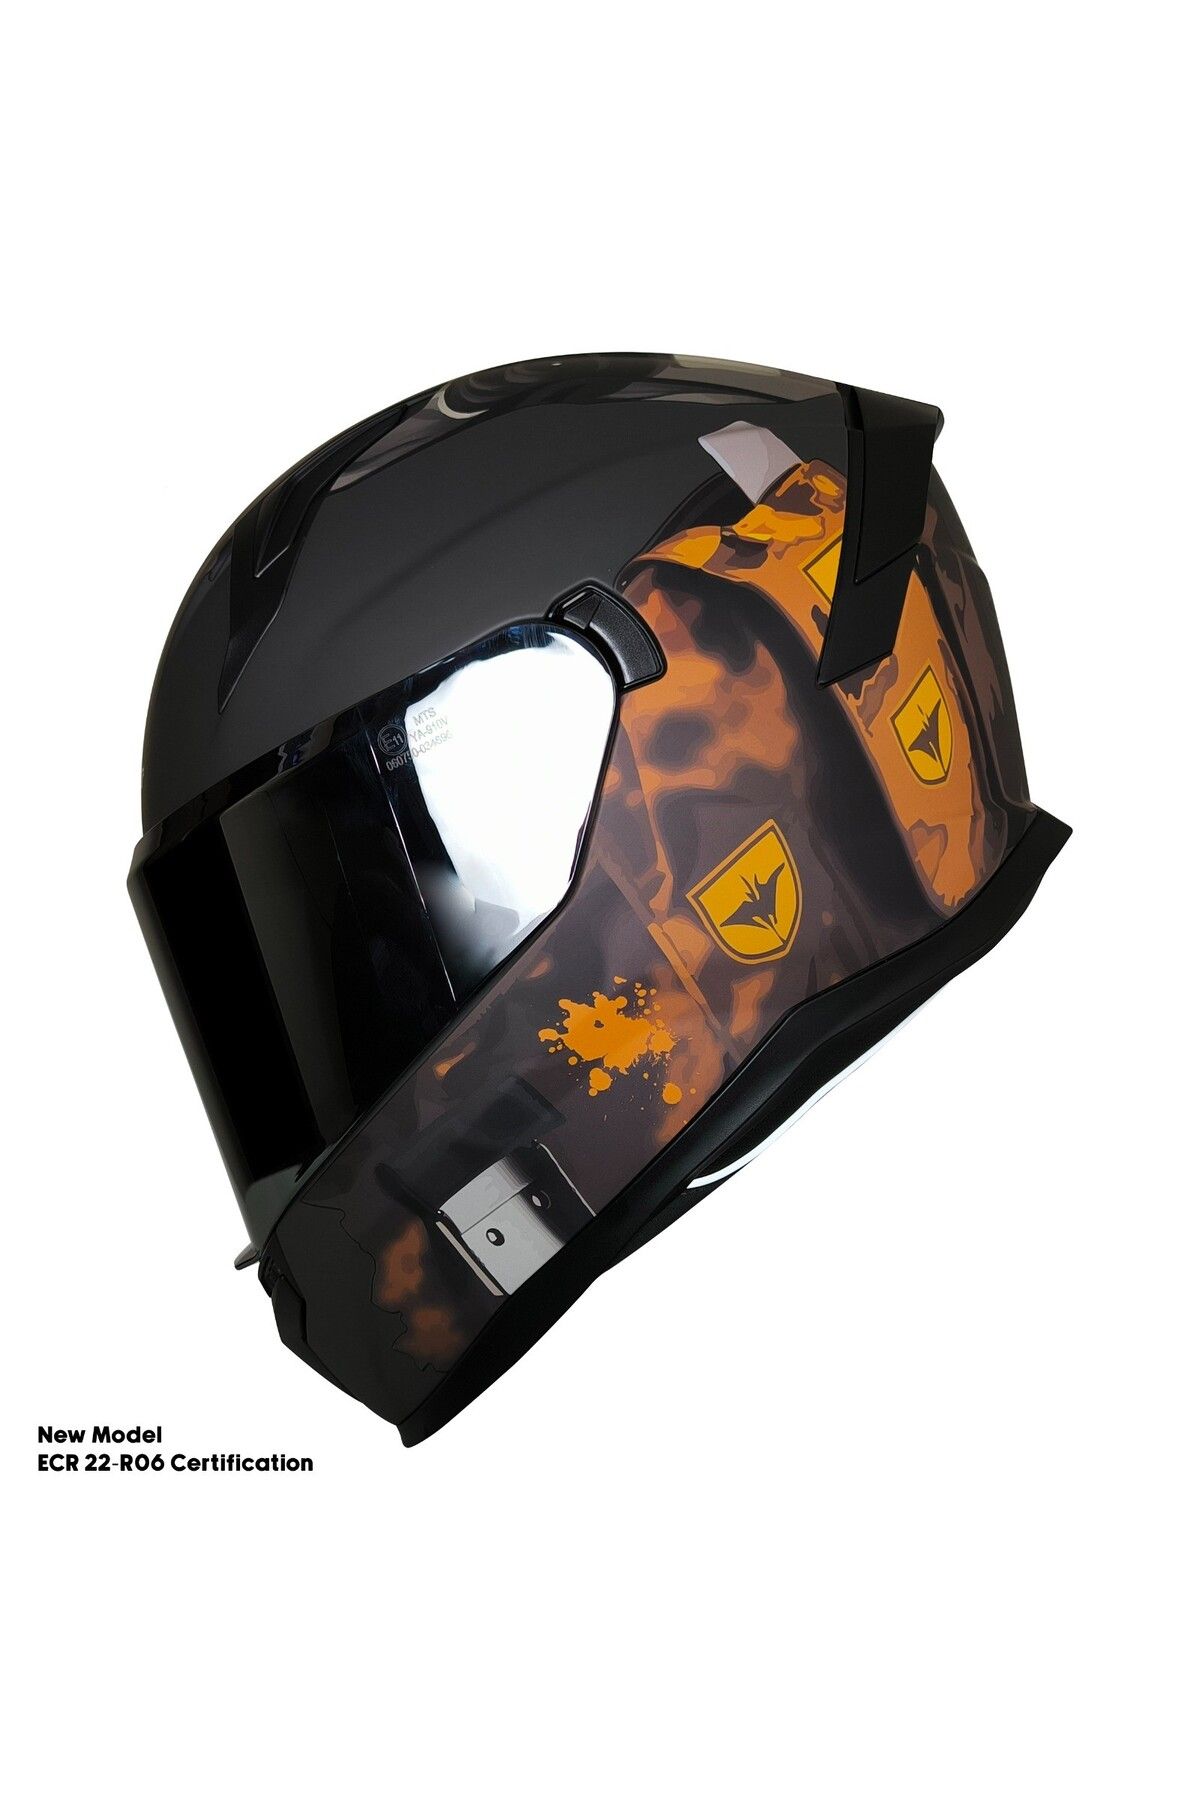 ebakbak Motosiklet Kask Ece 22.R06 Sertifikalı Güneş Vizörlü Fiber Kask Full Face Motor Kaskı Yeni Sezon